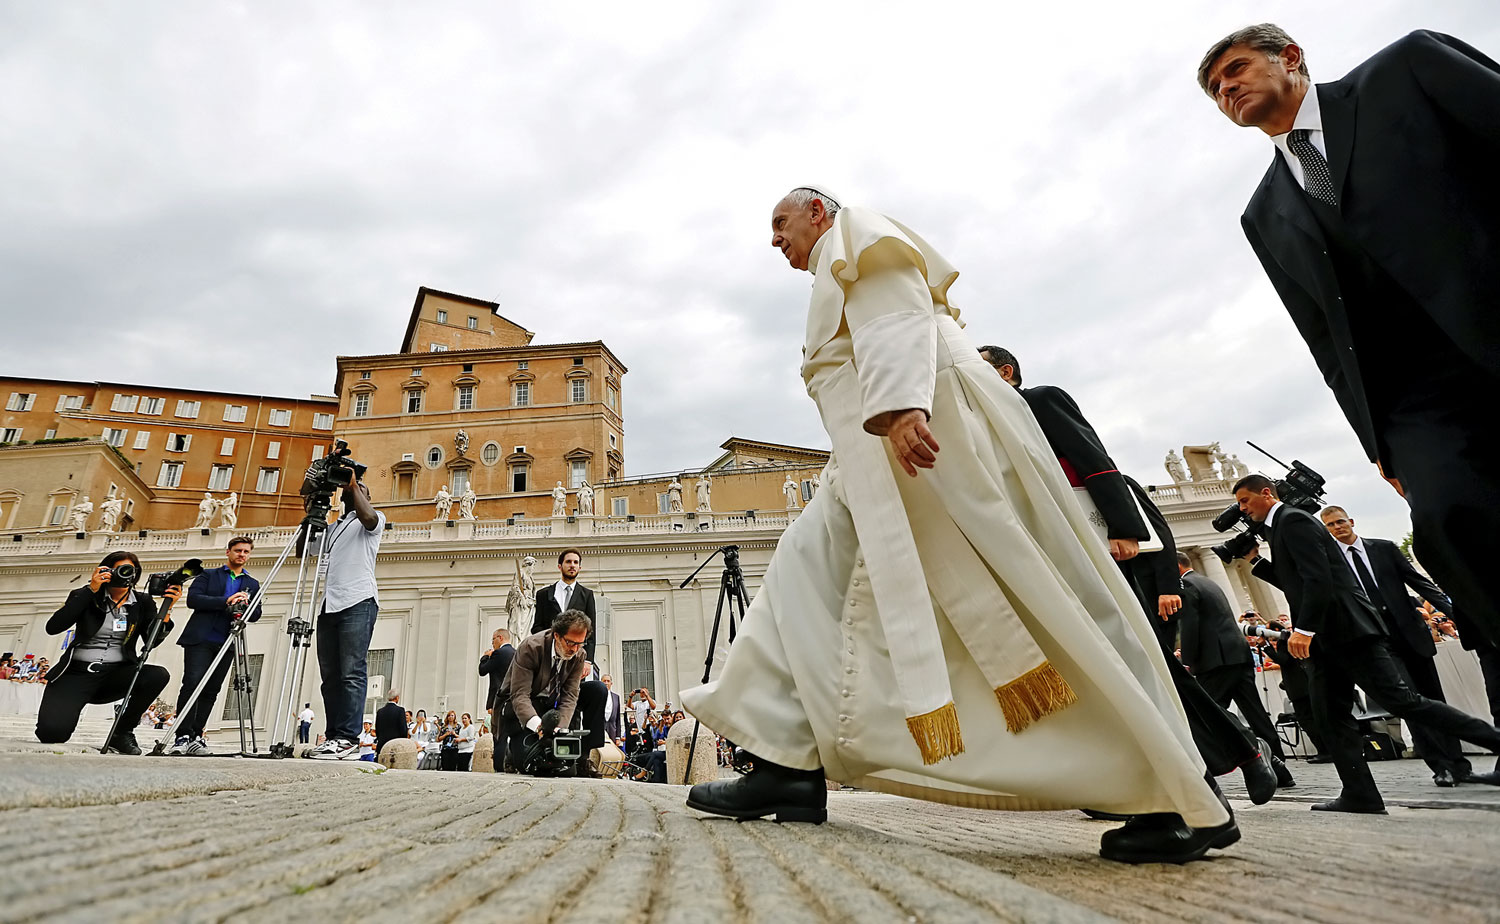 A pápa a Vatikánban. Lépést kell tartani a korral